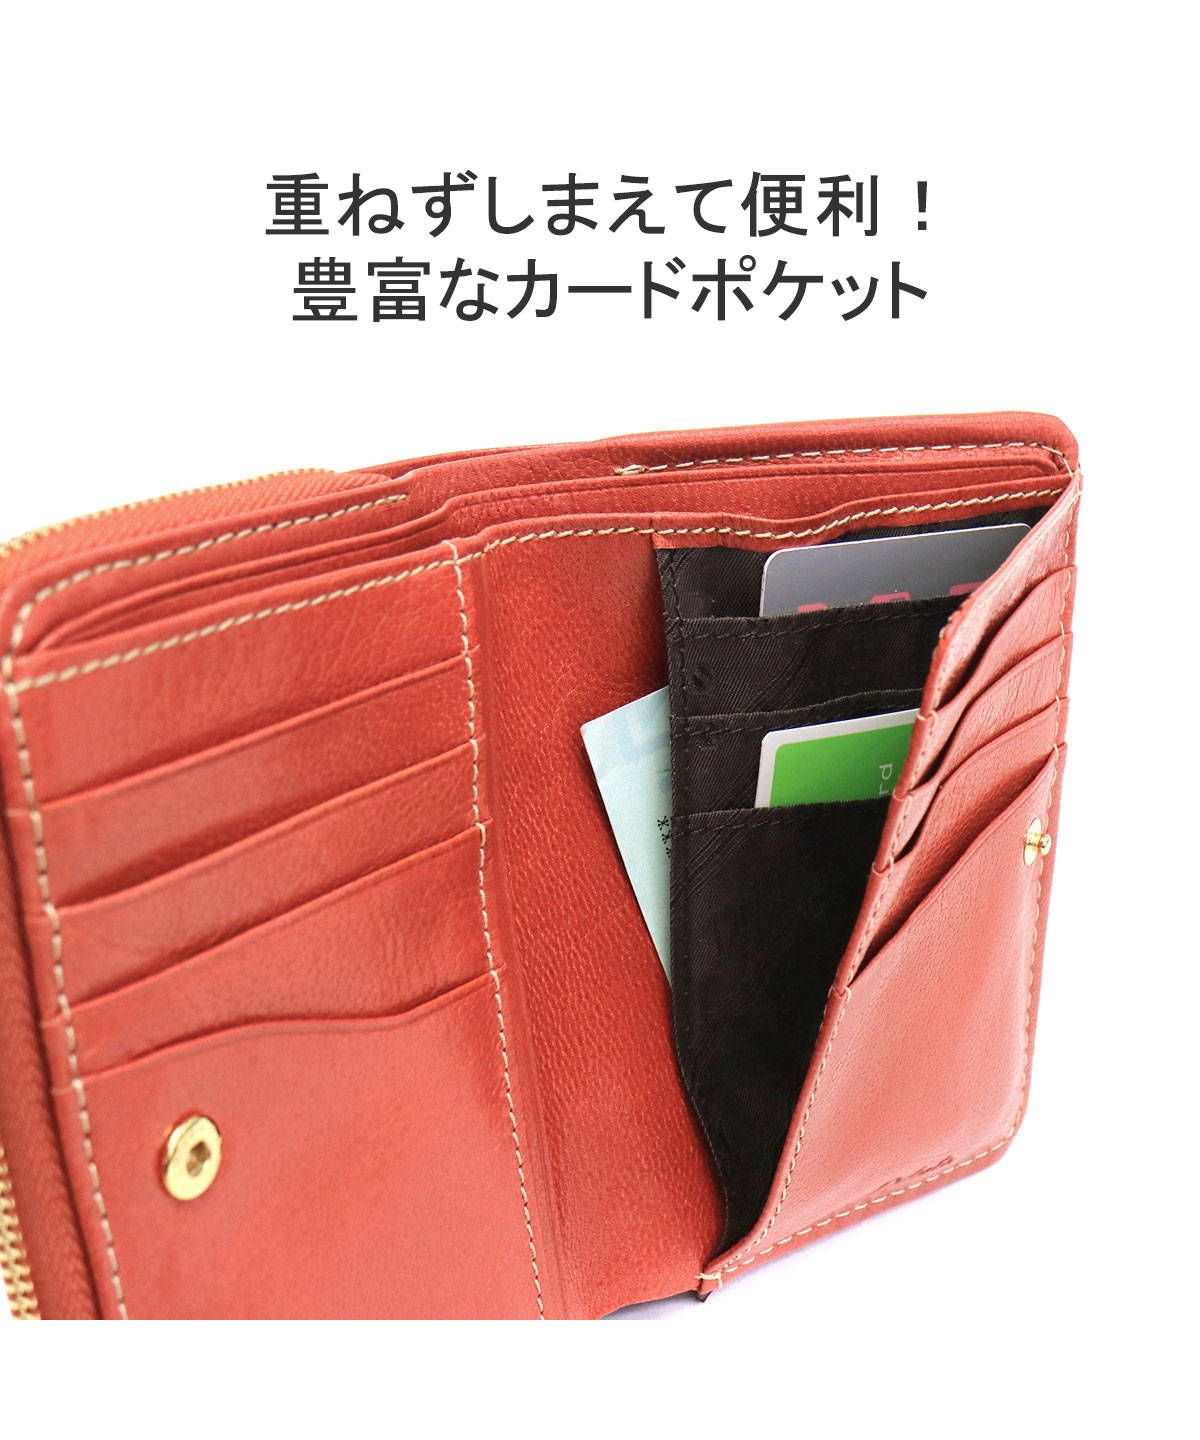 ダコタ 財布 Dakota モデルノ 二つ折り財布 コンパクト財布 財布 